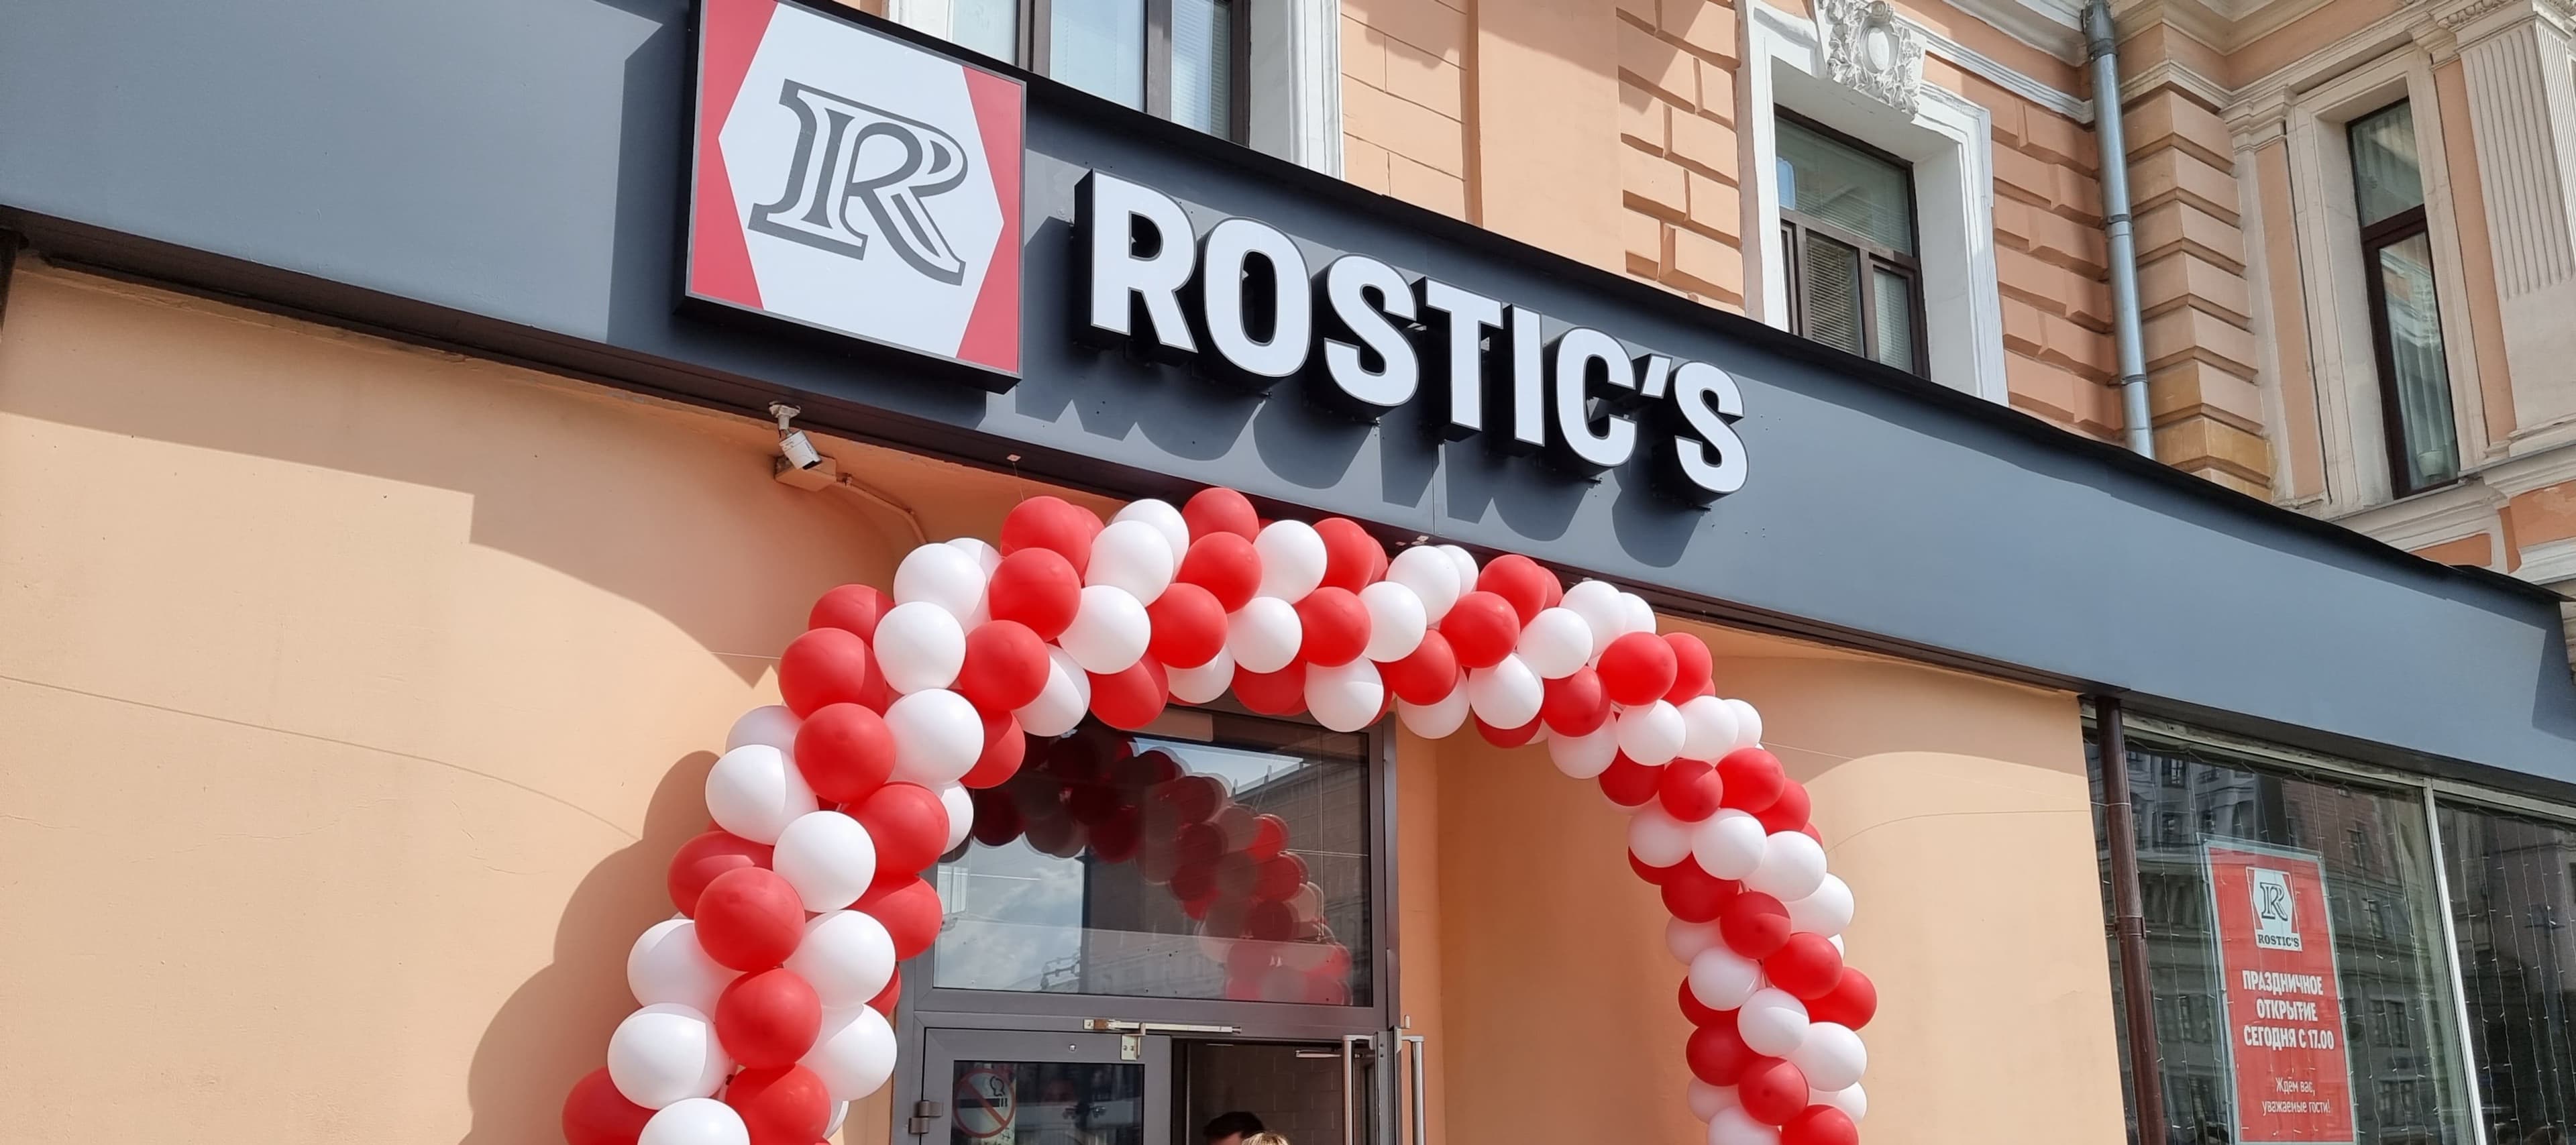 Фото новости: "В Москве открылся первый флагманский ресторан Rostic's"